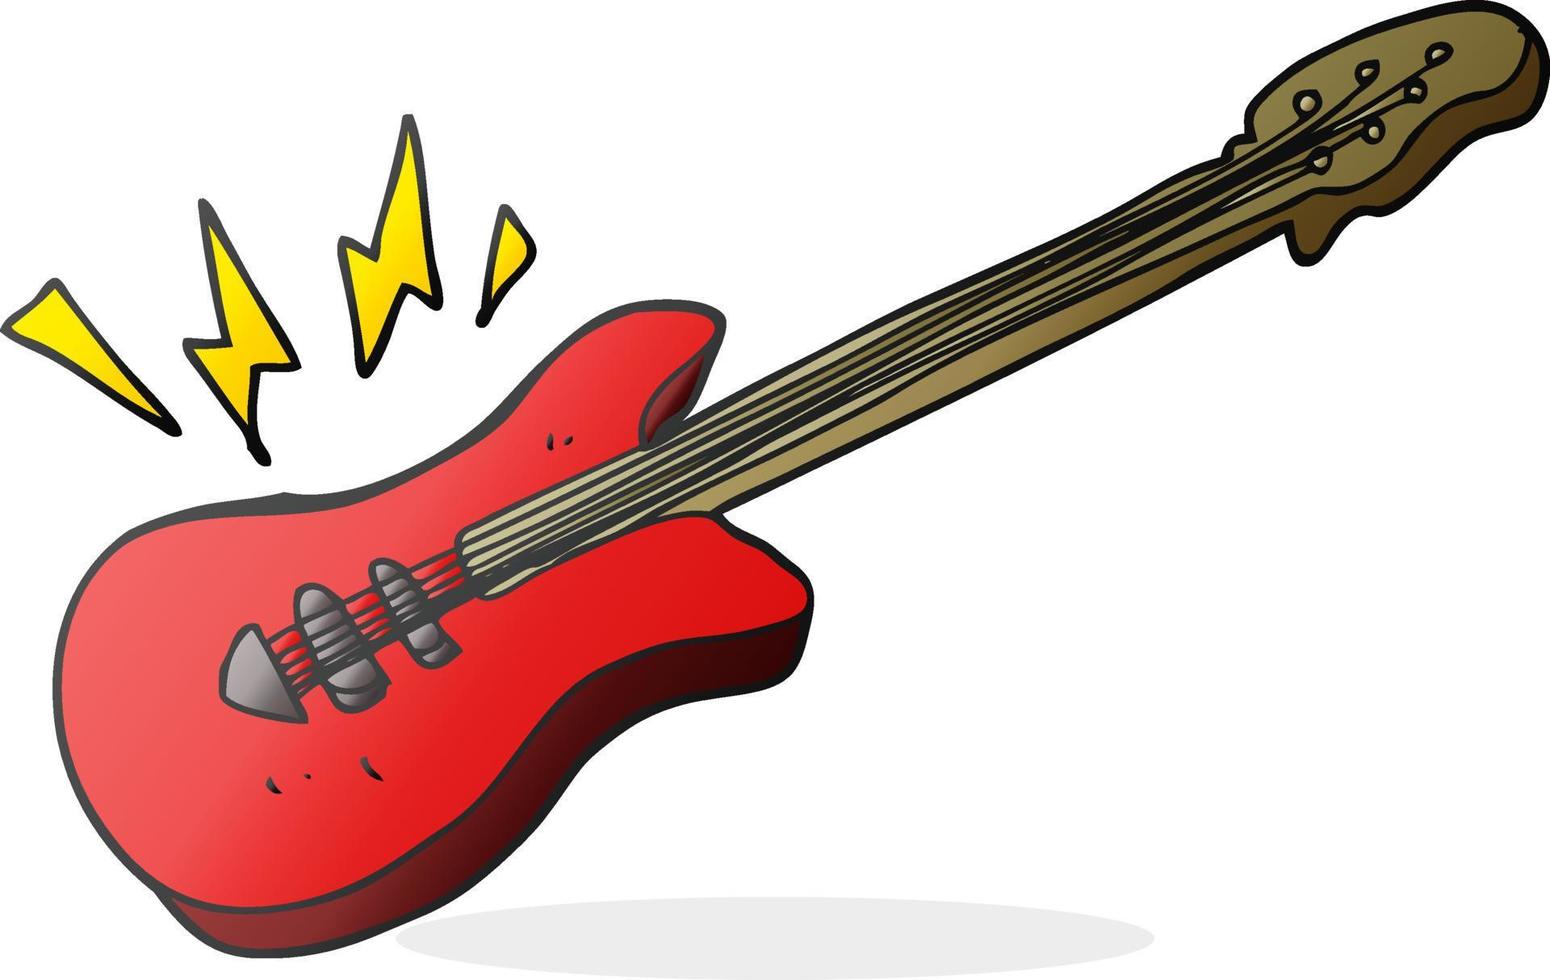 guitarra elétrica de desenho animado vetor